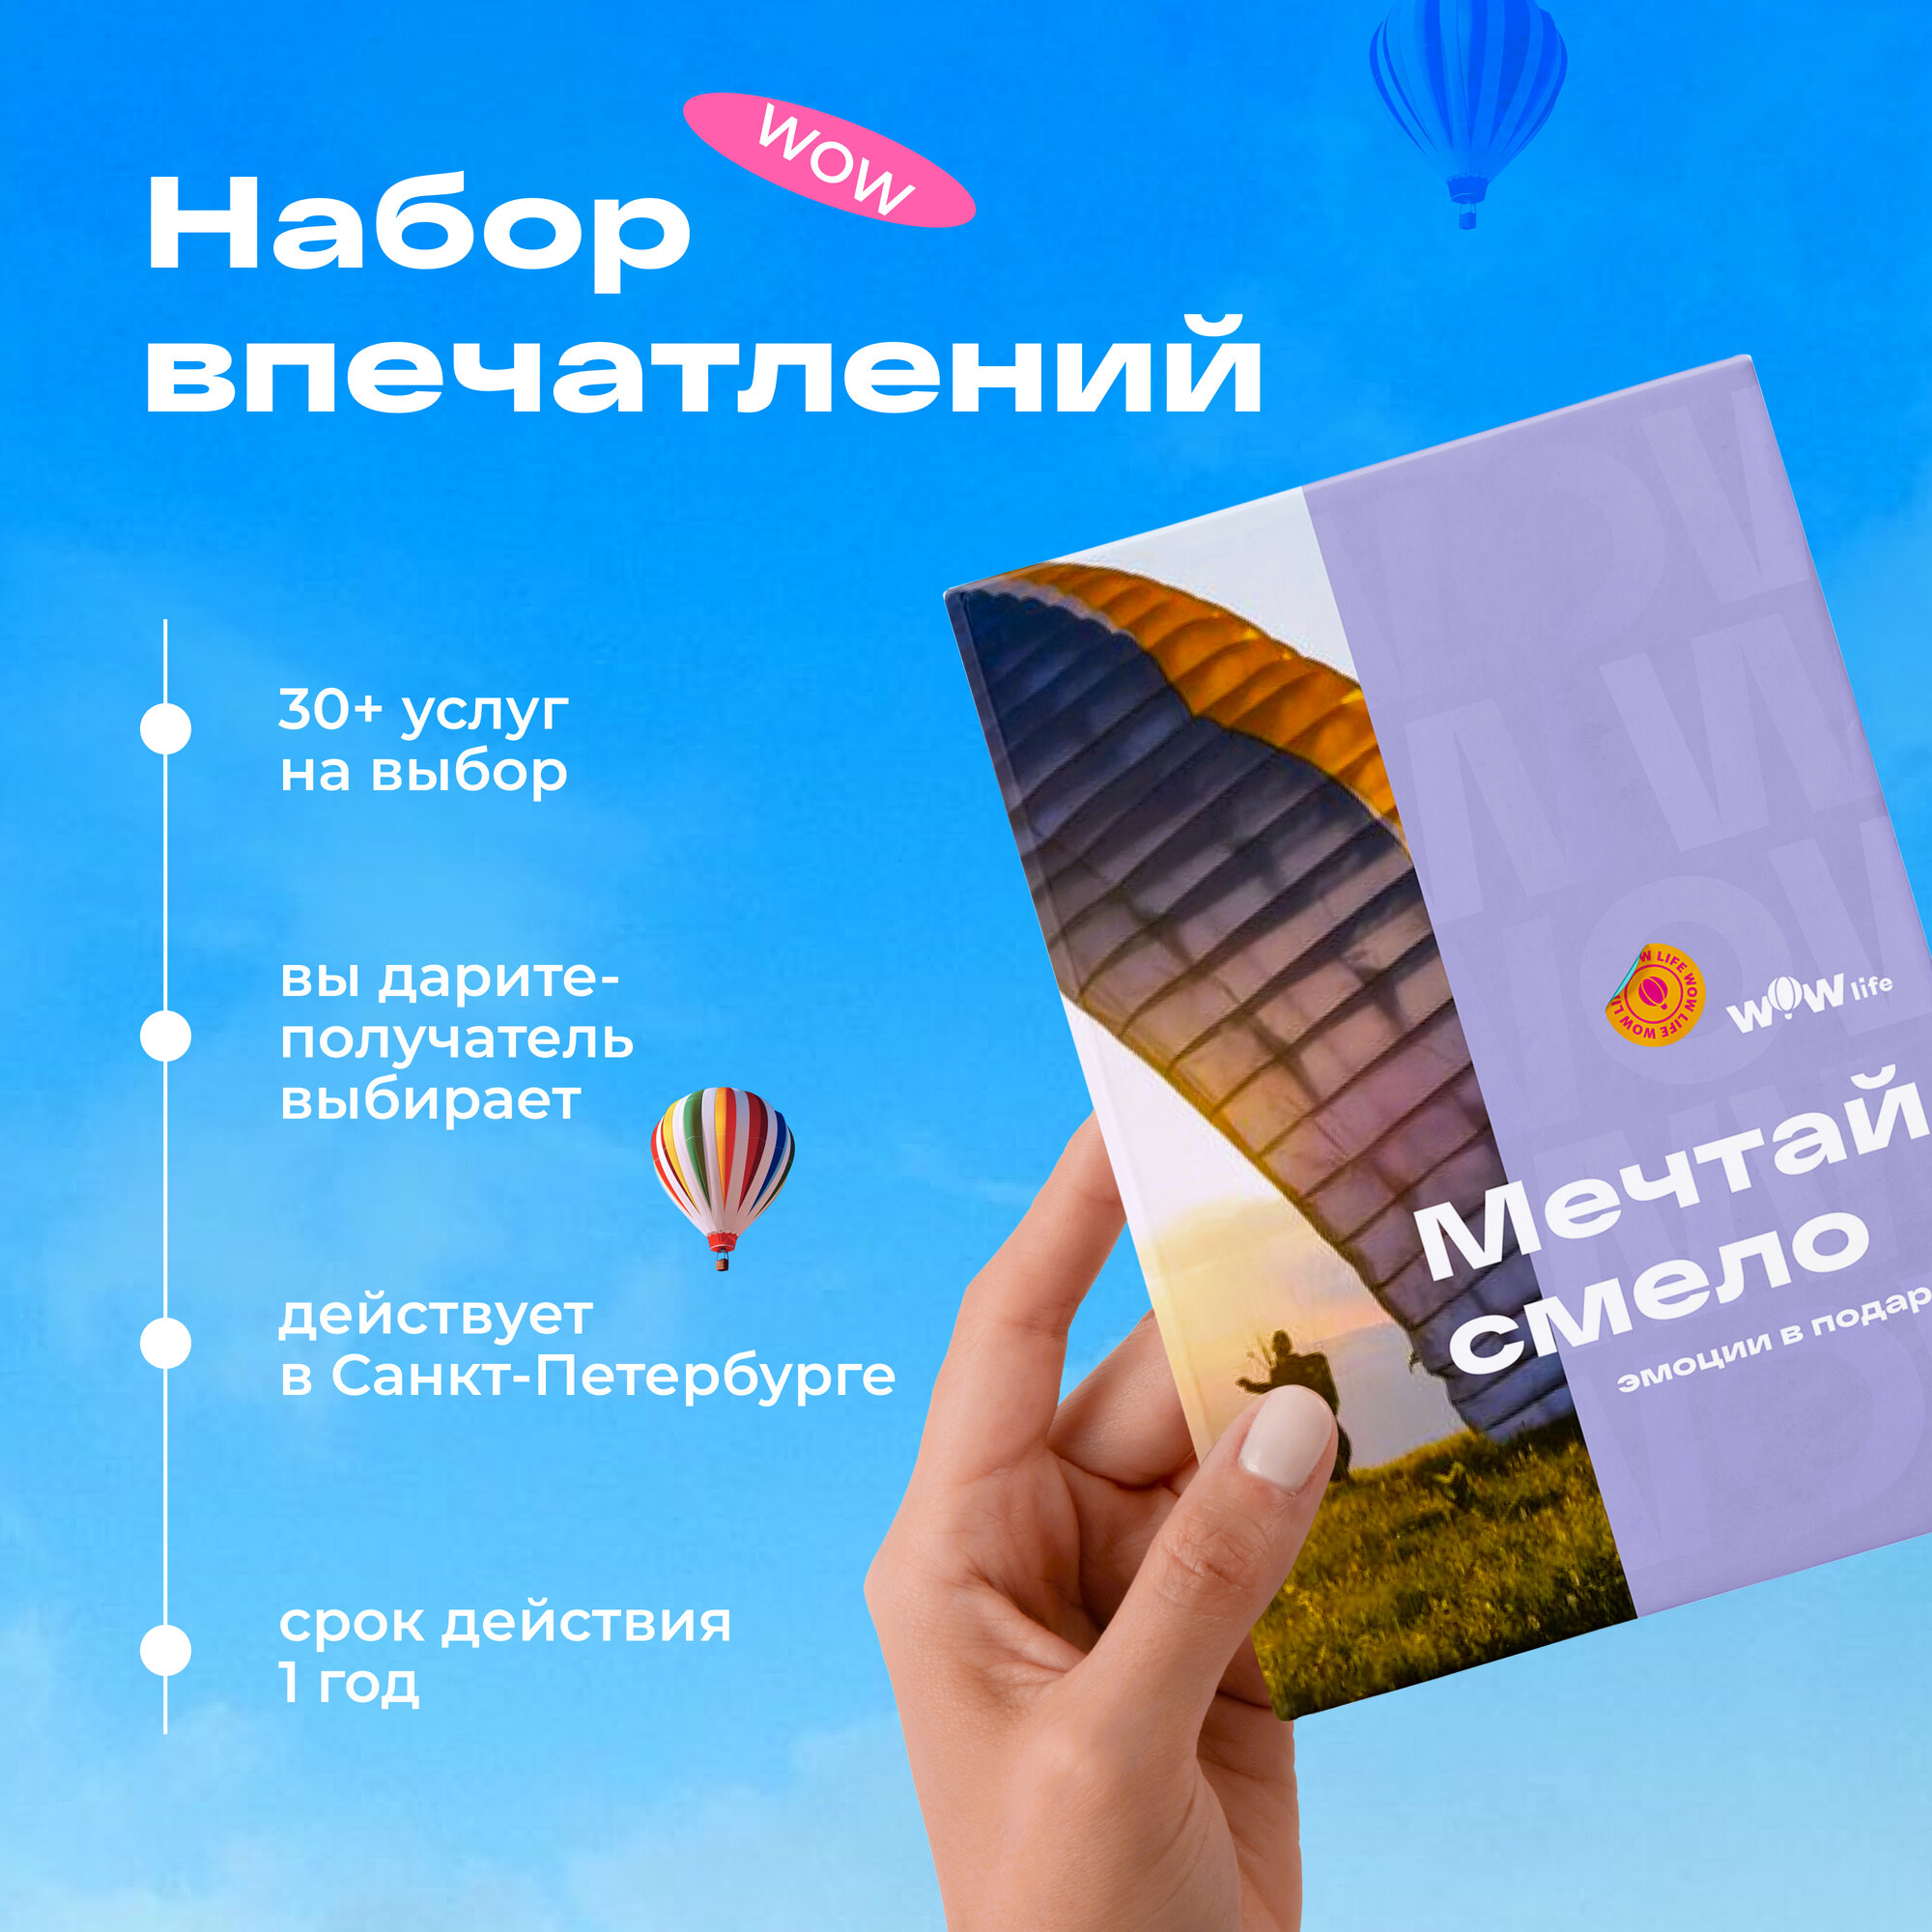 Подарочный сертификат WOWlife "Мечтай смело" - набор из впечатлений на выбор, Санкт-Петербург